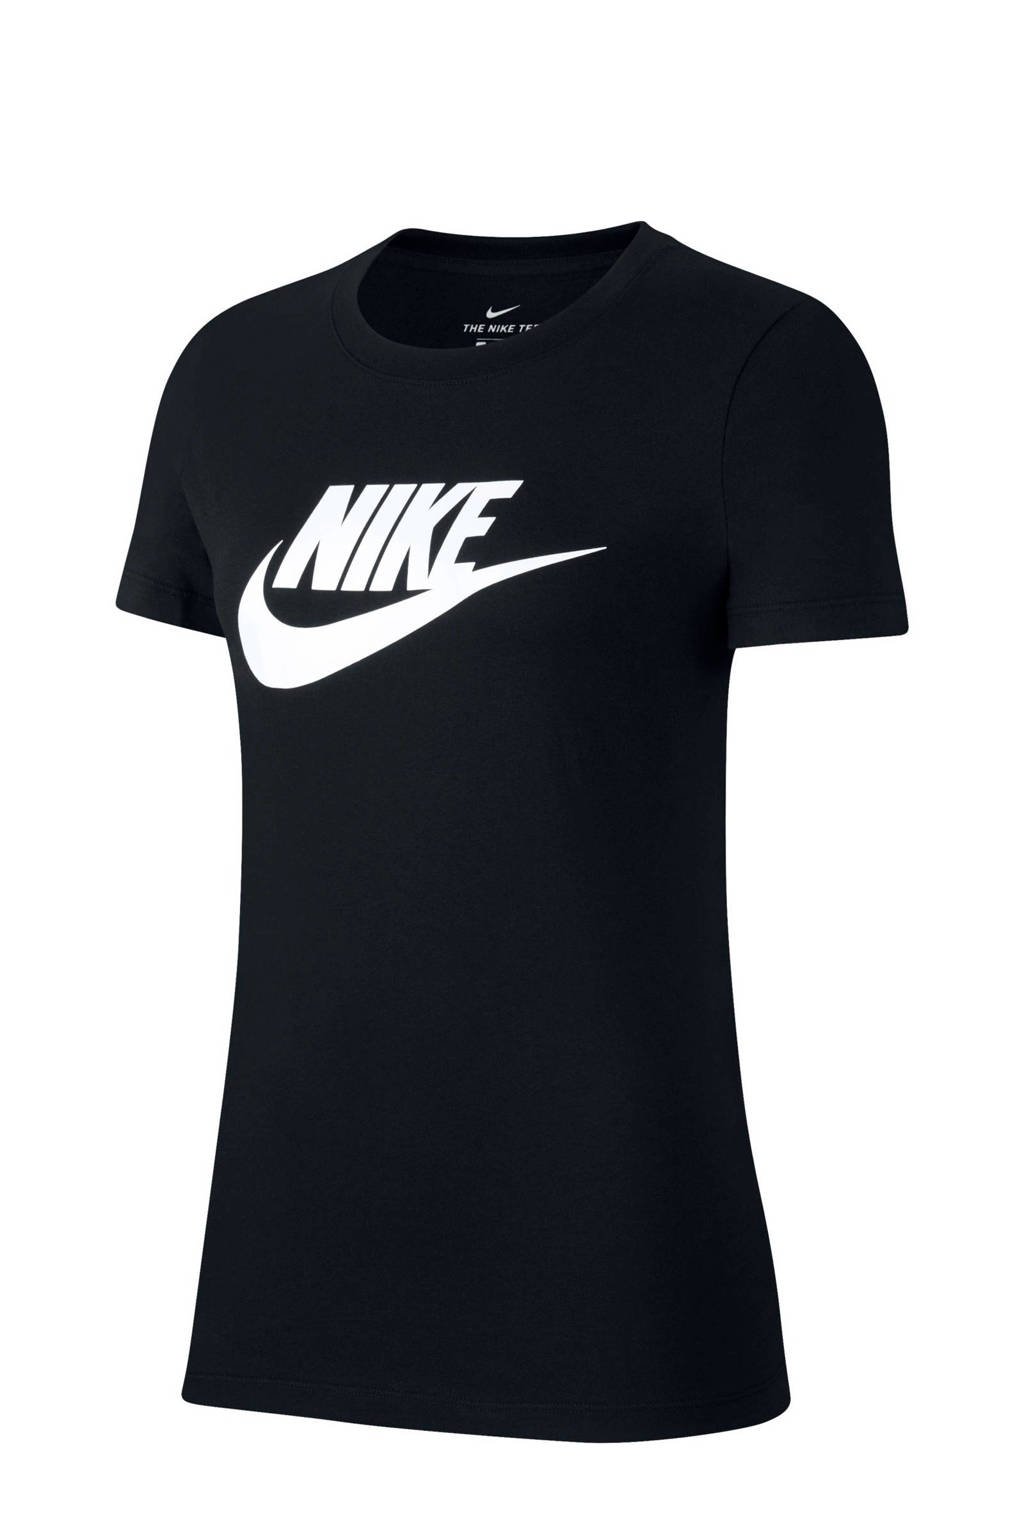 Nike T-shirt zwart, Zwart